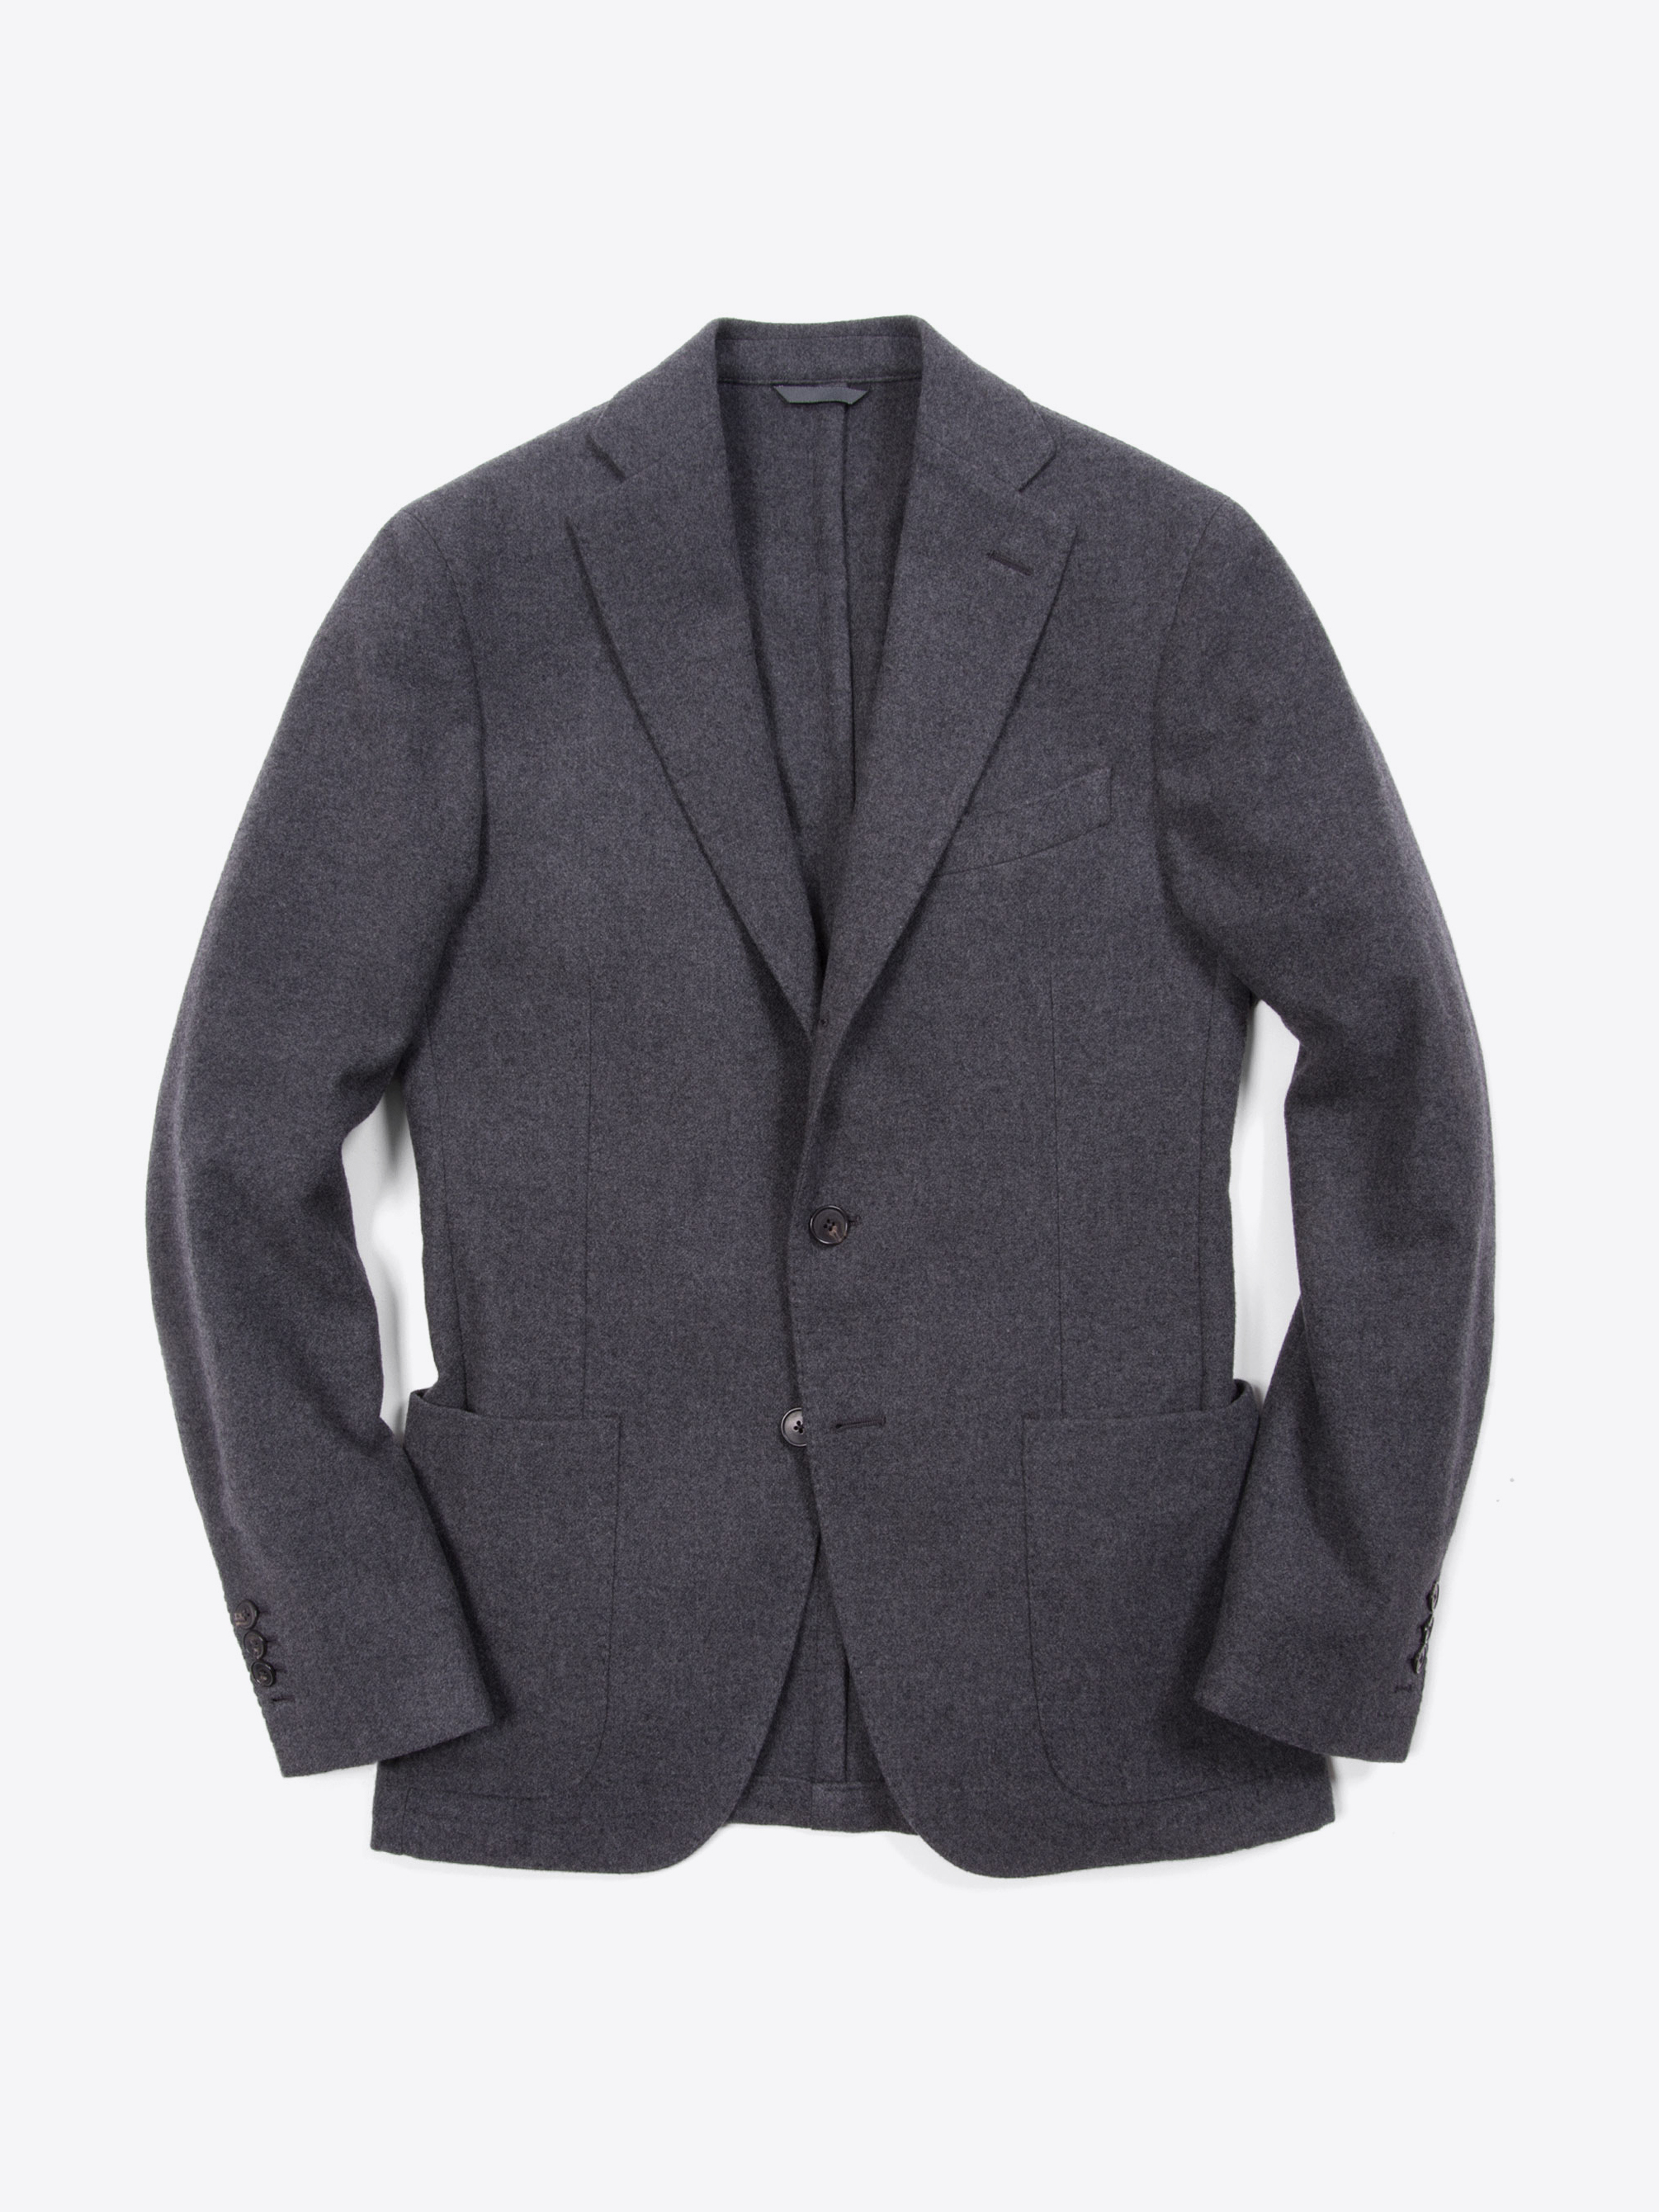 Leroy Grey Wool Jacket by Proper Cloth